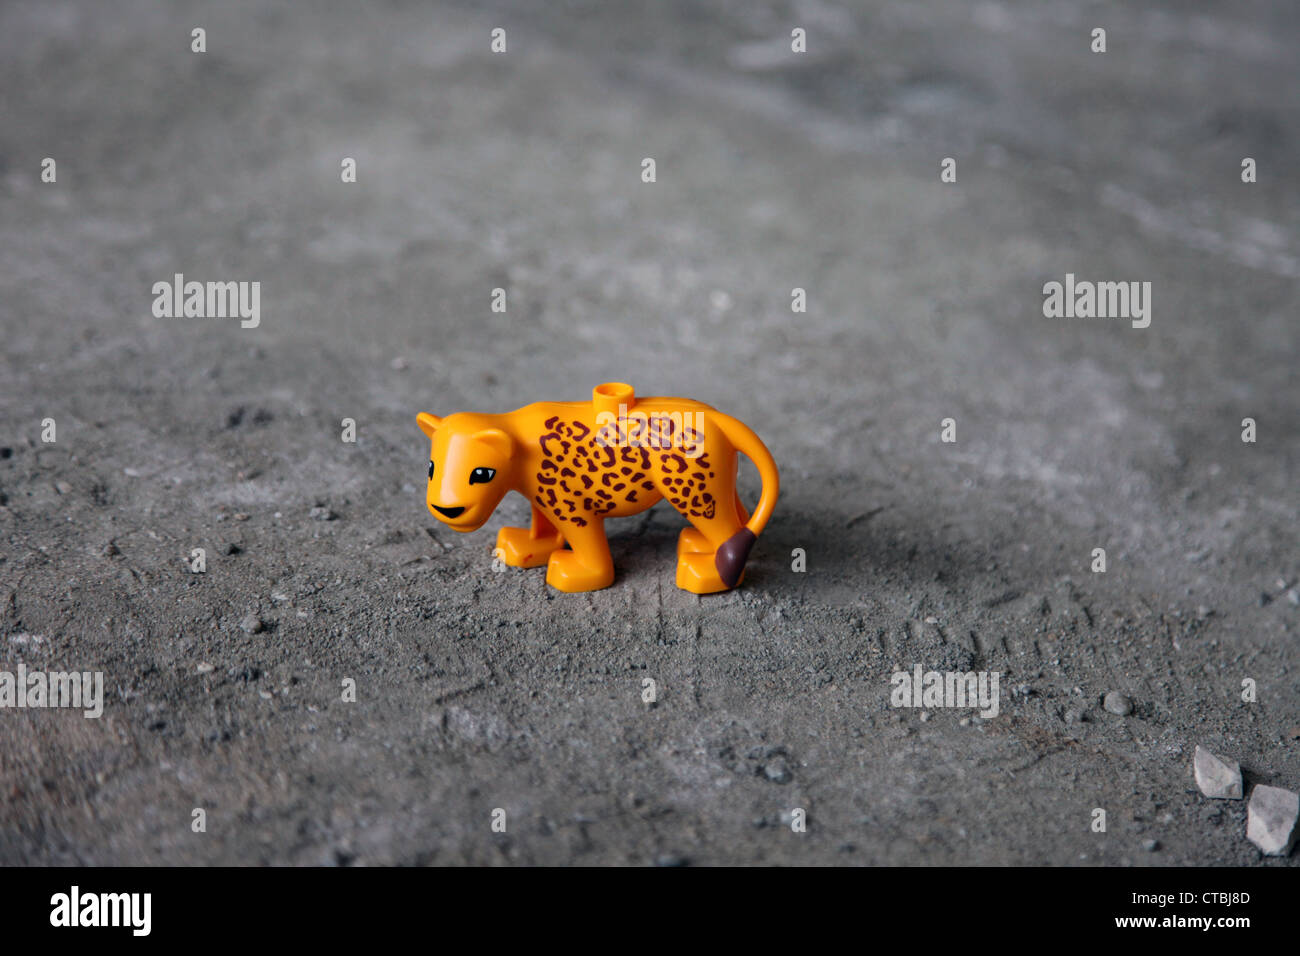 Es ist ein Foto von einem Spielzeug Kunststoff Tiger in orange Farbe, die auf dem Boden auf den Staub stehen. Es ist ein Kind kleines Spielzeug Figur einsam Stockfoto